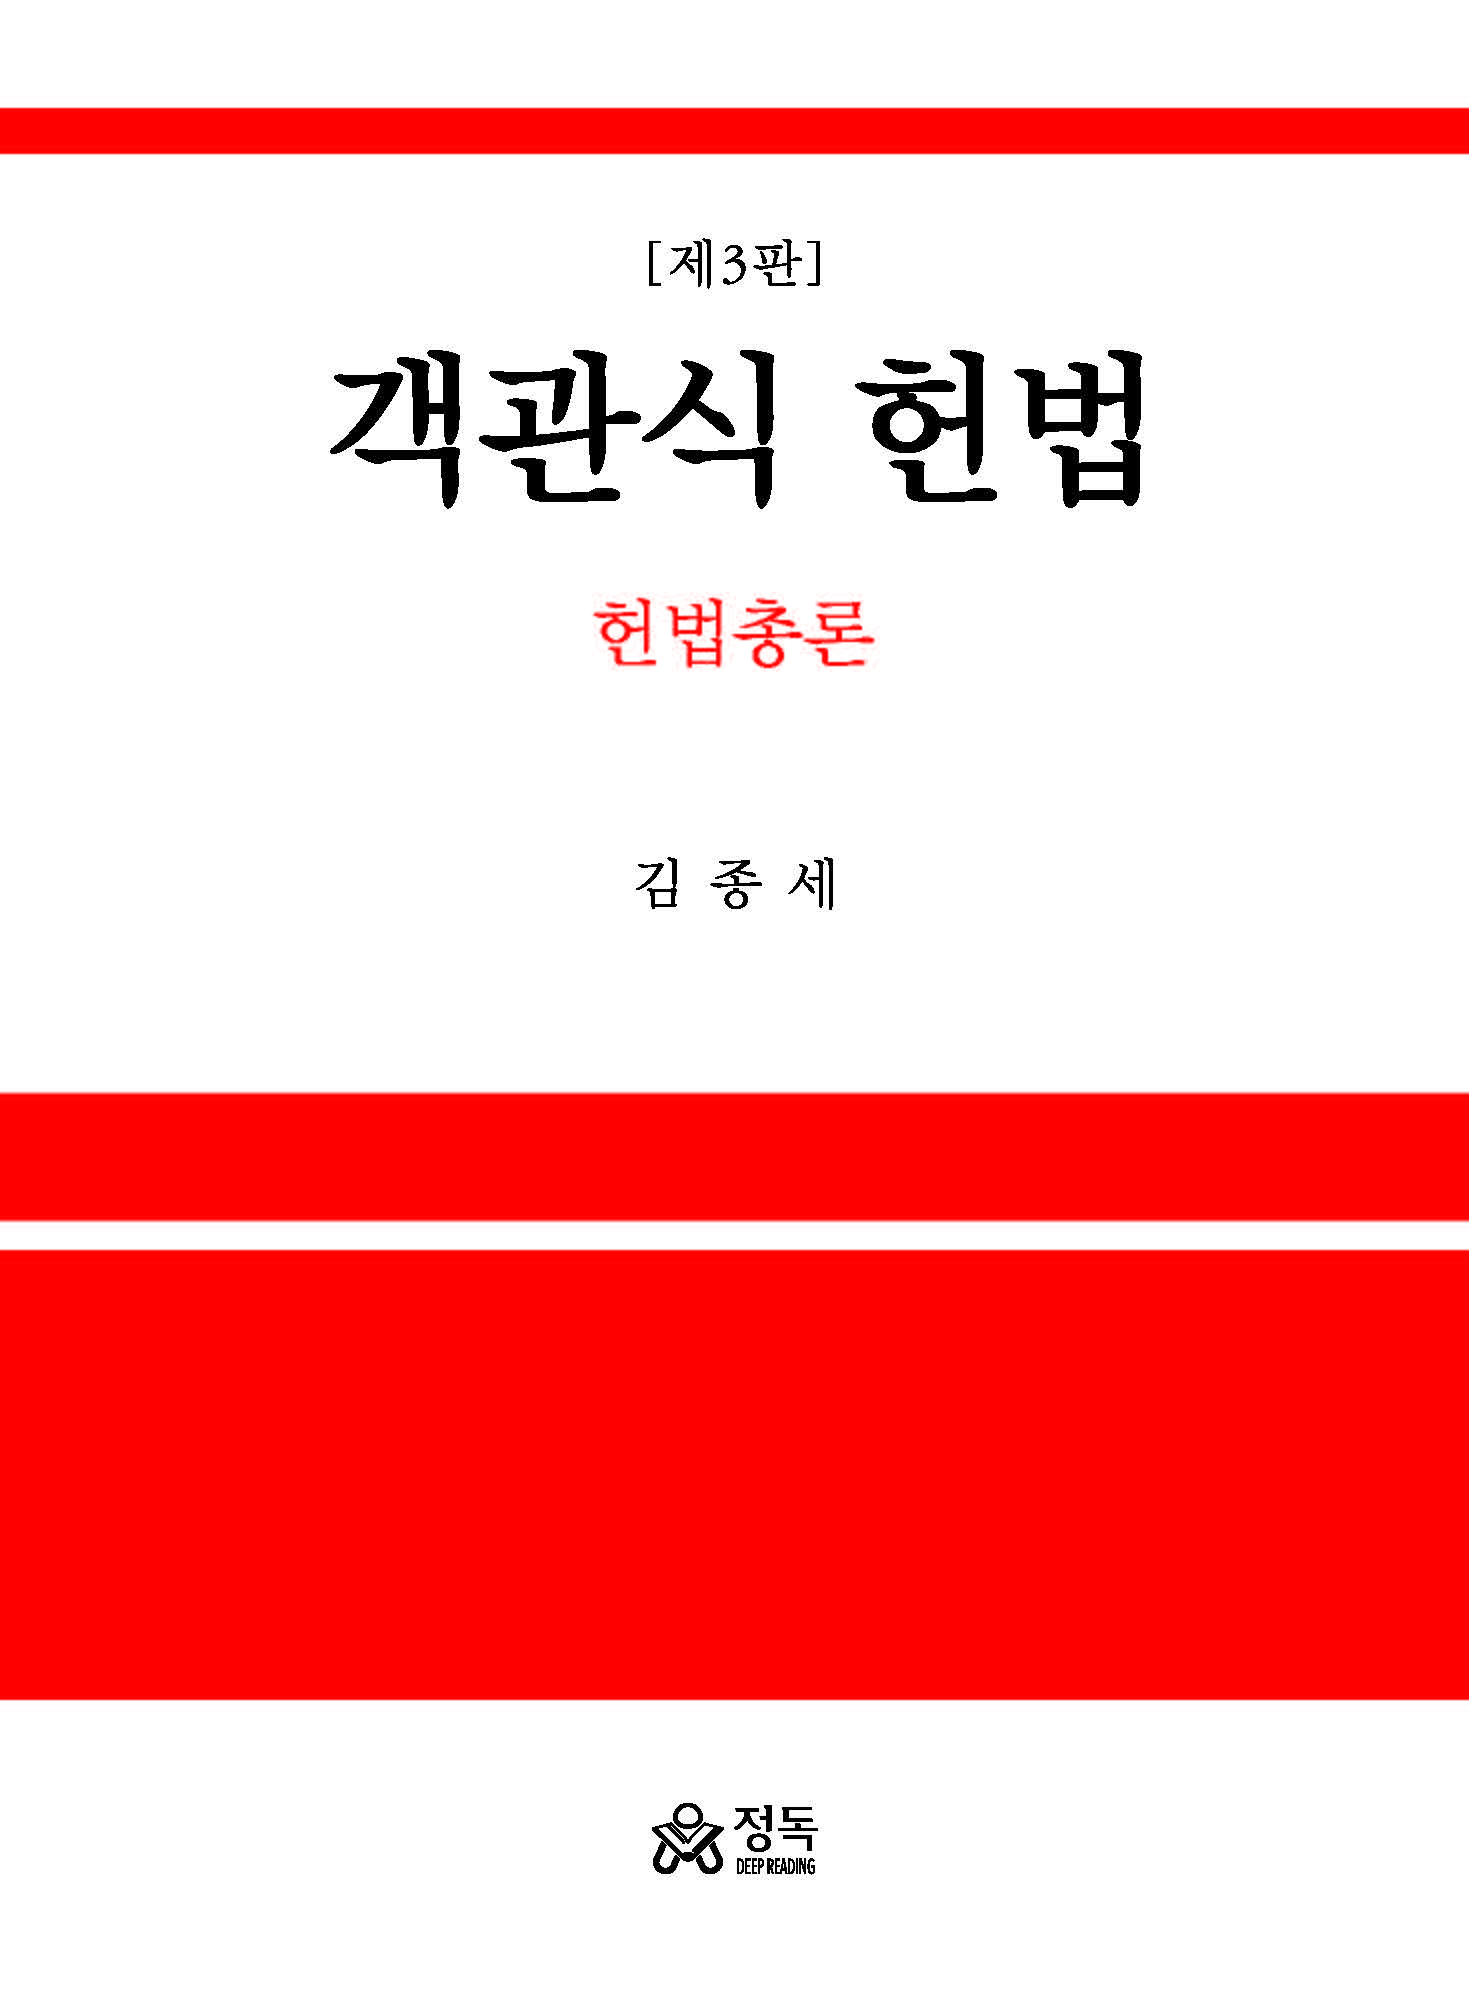 객관식 헌법 - 헌법총론